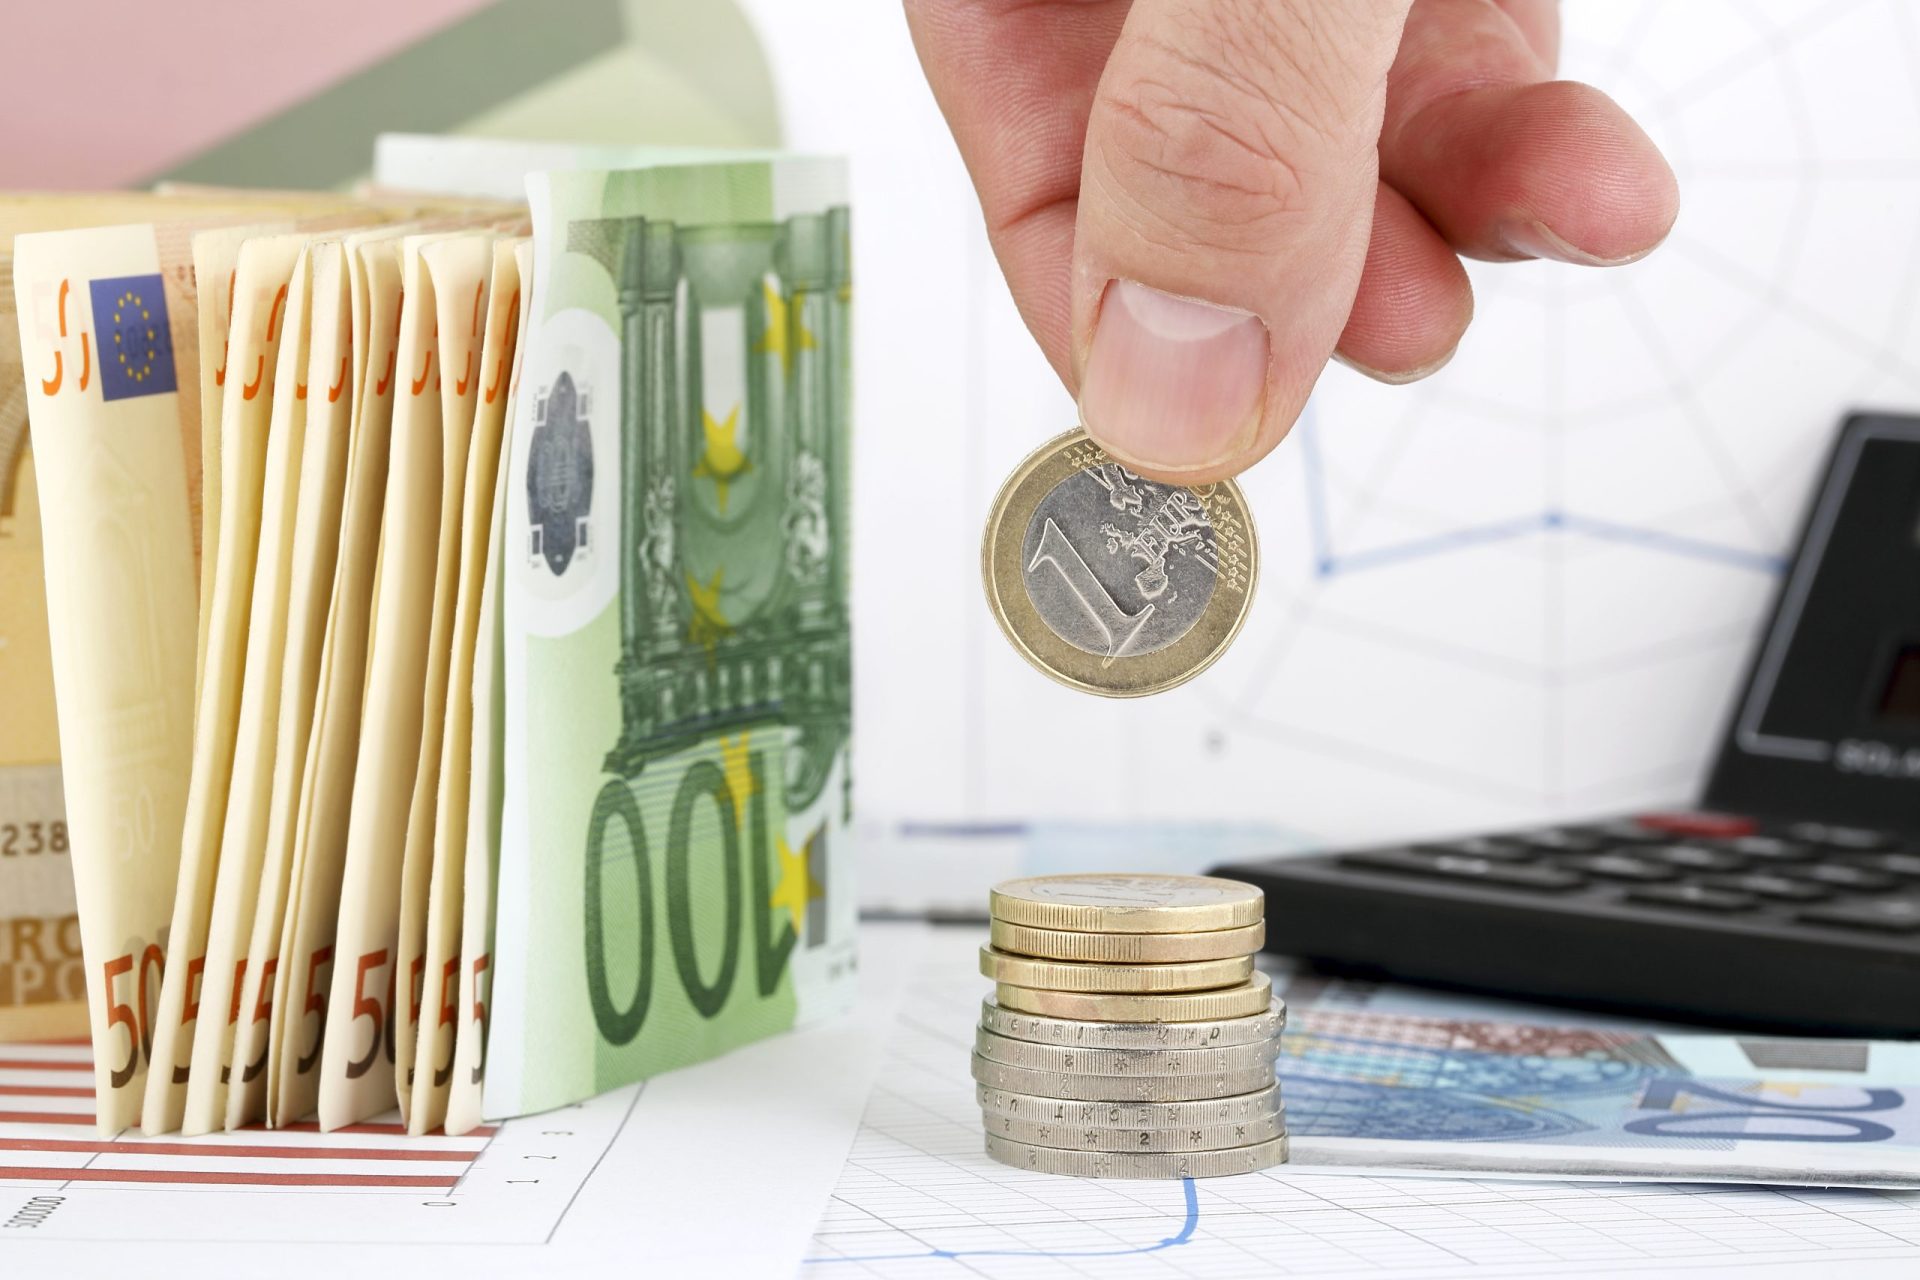 UTAO admite desvio de 660 milhões de euros nas receitas fiscais no final do ano